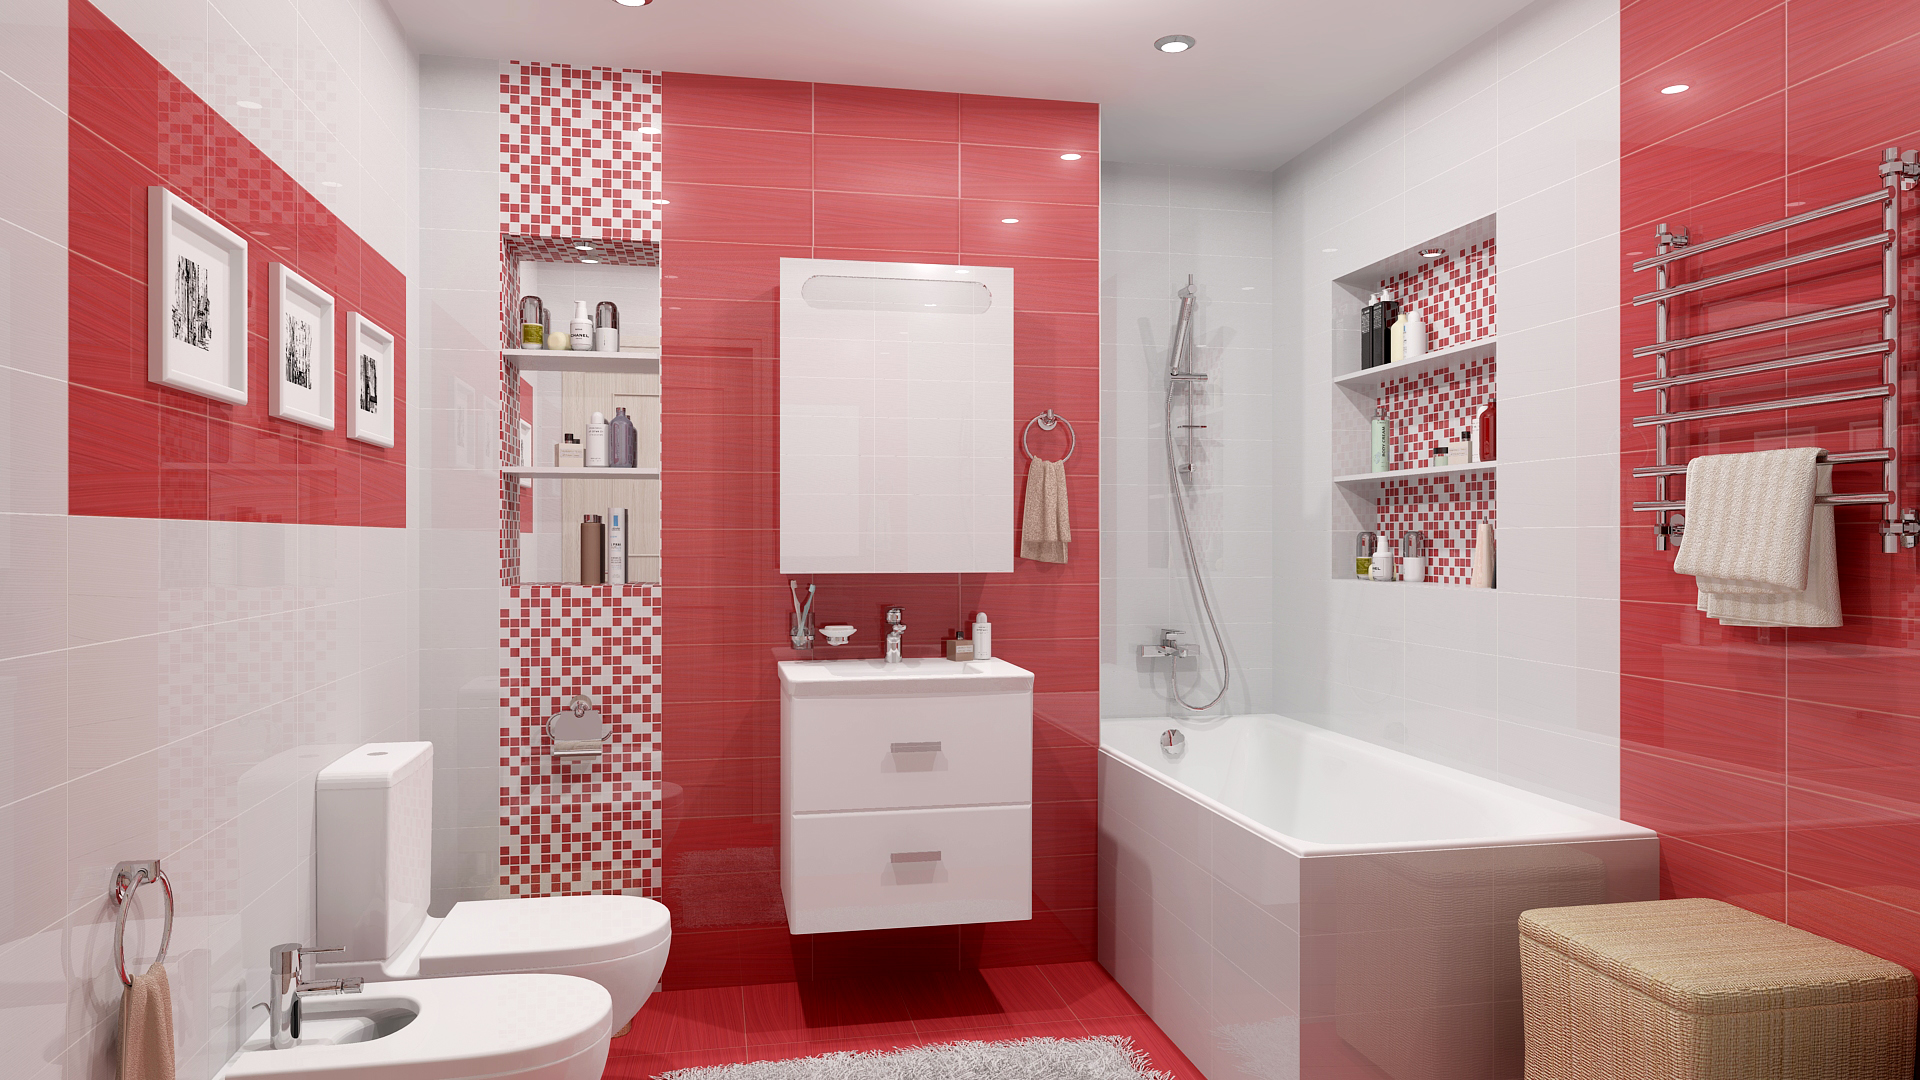 Фото ванных комнат в плитке после ремонта. модные ванные комнаты 2020-2021 года: какие узоры, цвета и тенденции в тренде